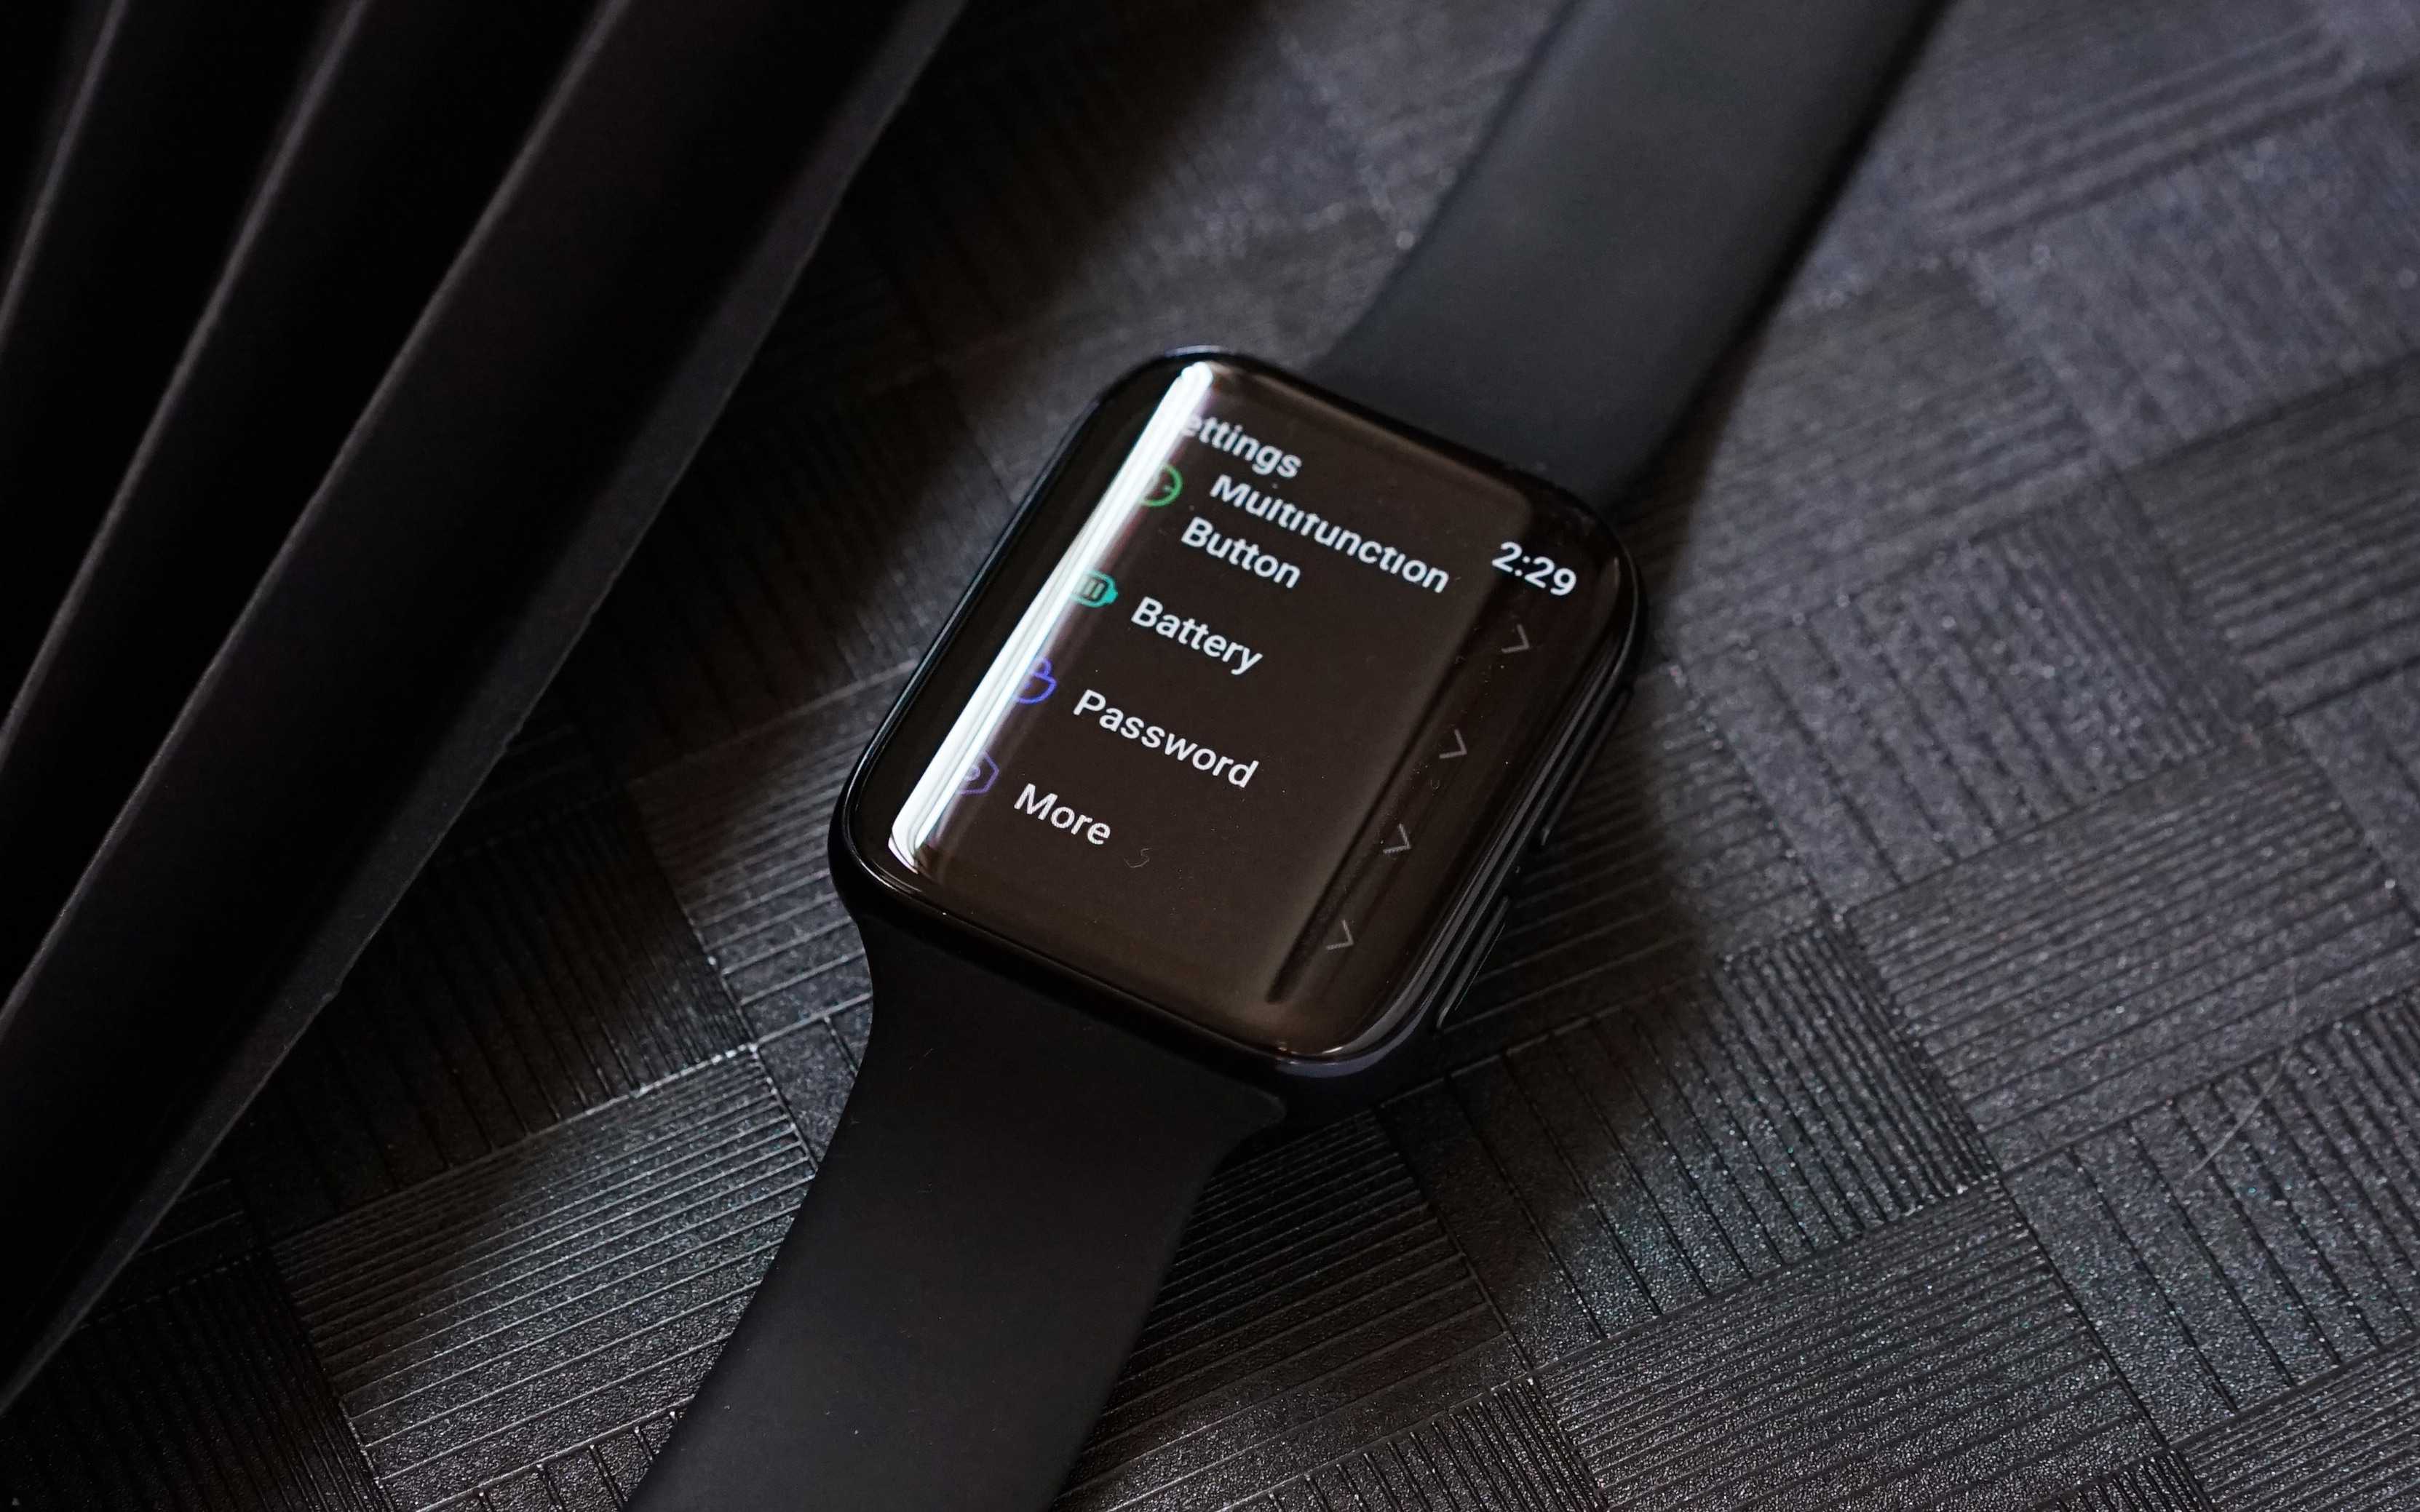 Smartwatch của OPPO
lộ thông số cấu hình với Snapdragon Wear 2500, kháng nước
5ATM, giá 6.7 triệu